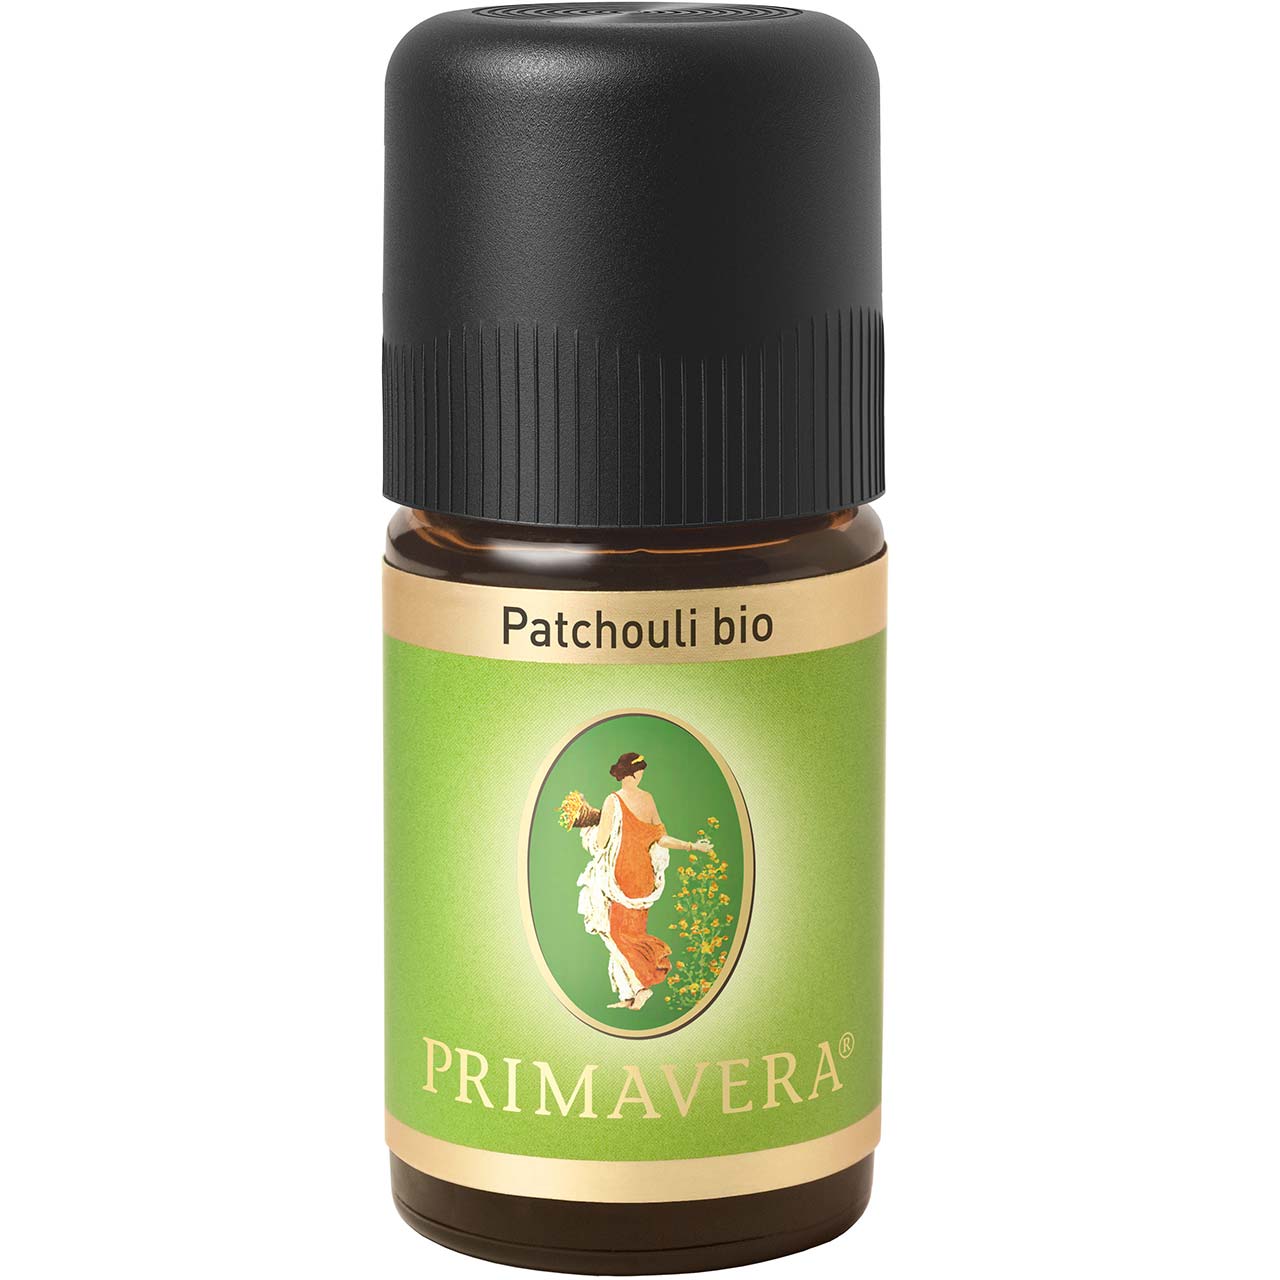 Patchouli bio 5ml - 100% ätherisches Öl